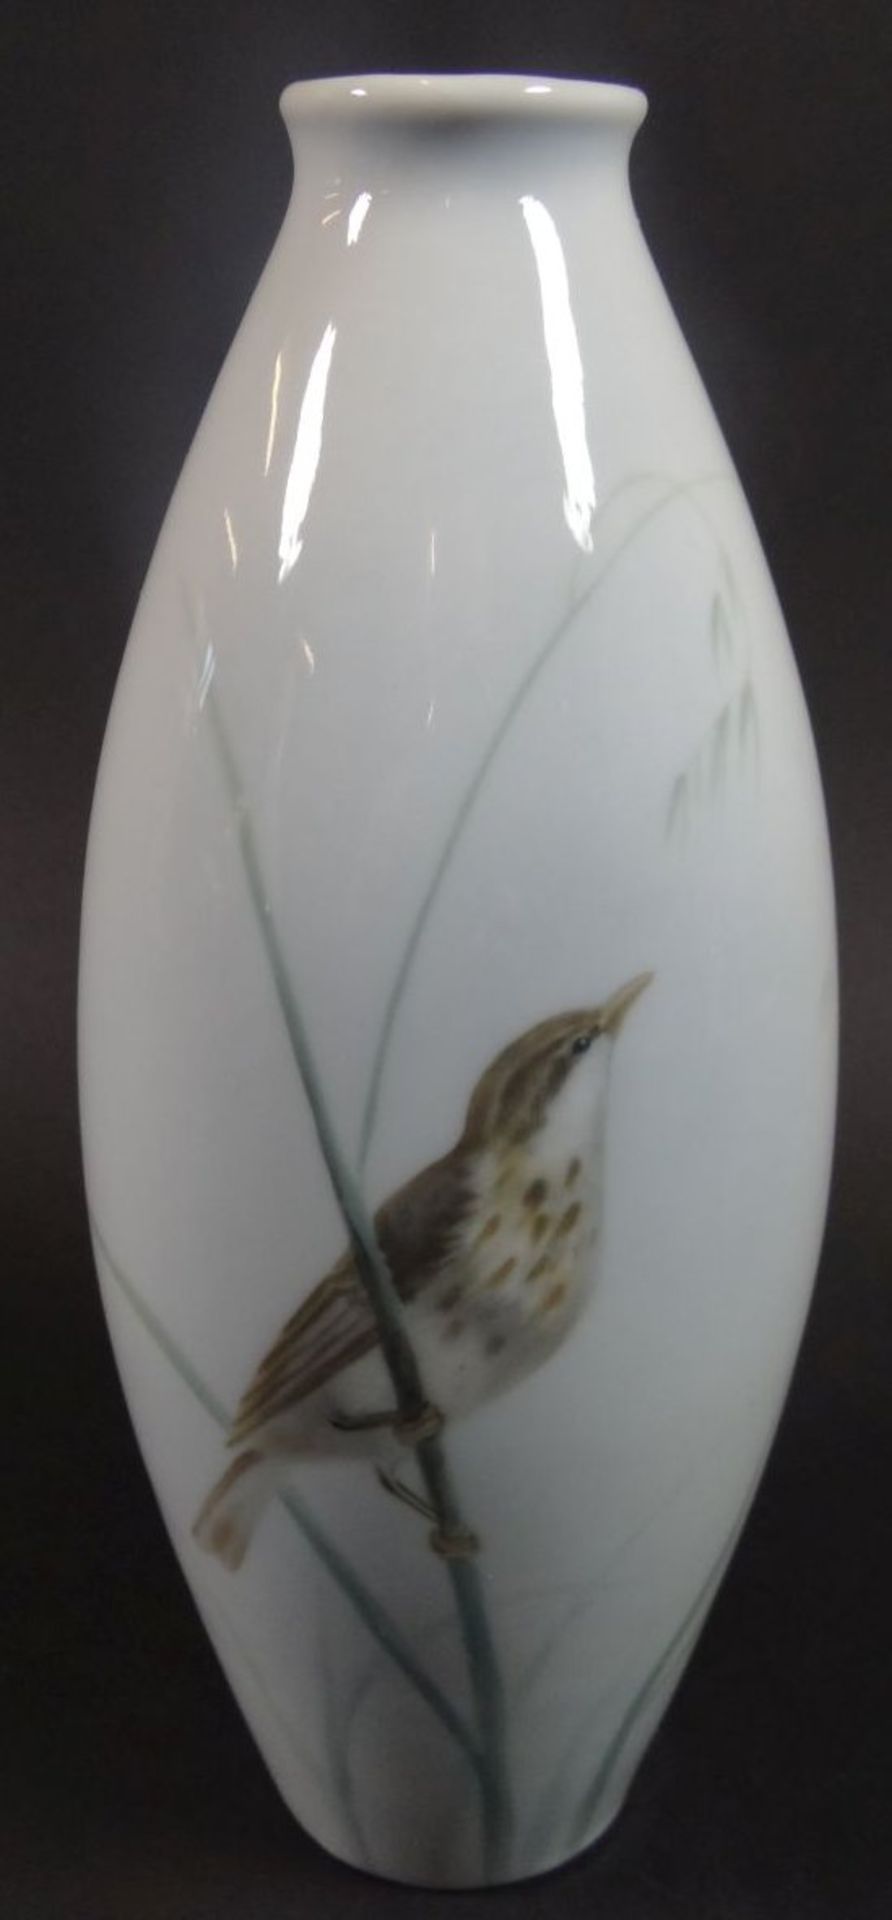 Vase mit Blumen-, Vogel-und Insektendekor "Kaestner", H-18 cm,- - -22.61 % buyer's premium on the